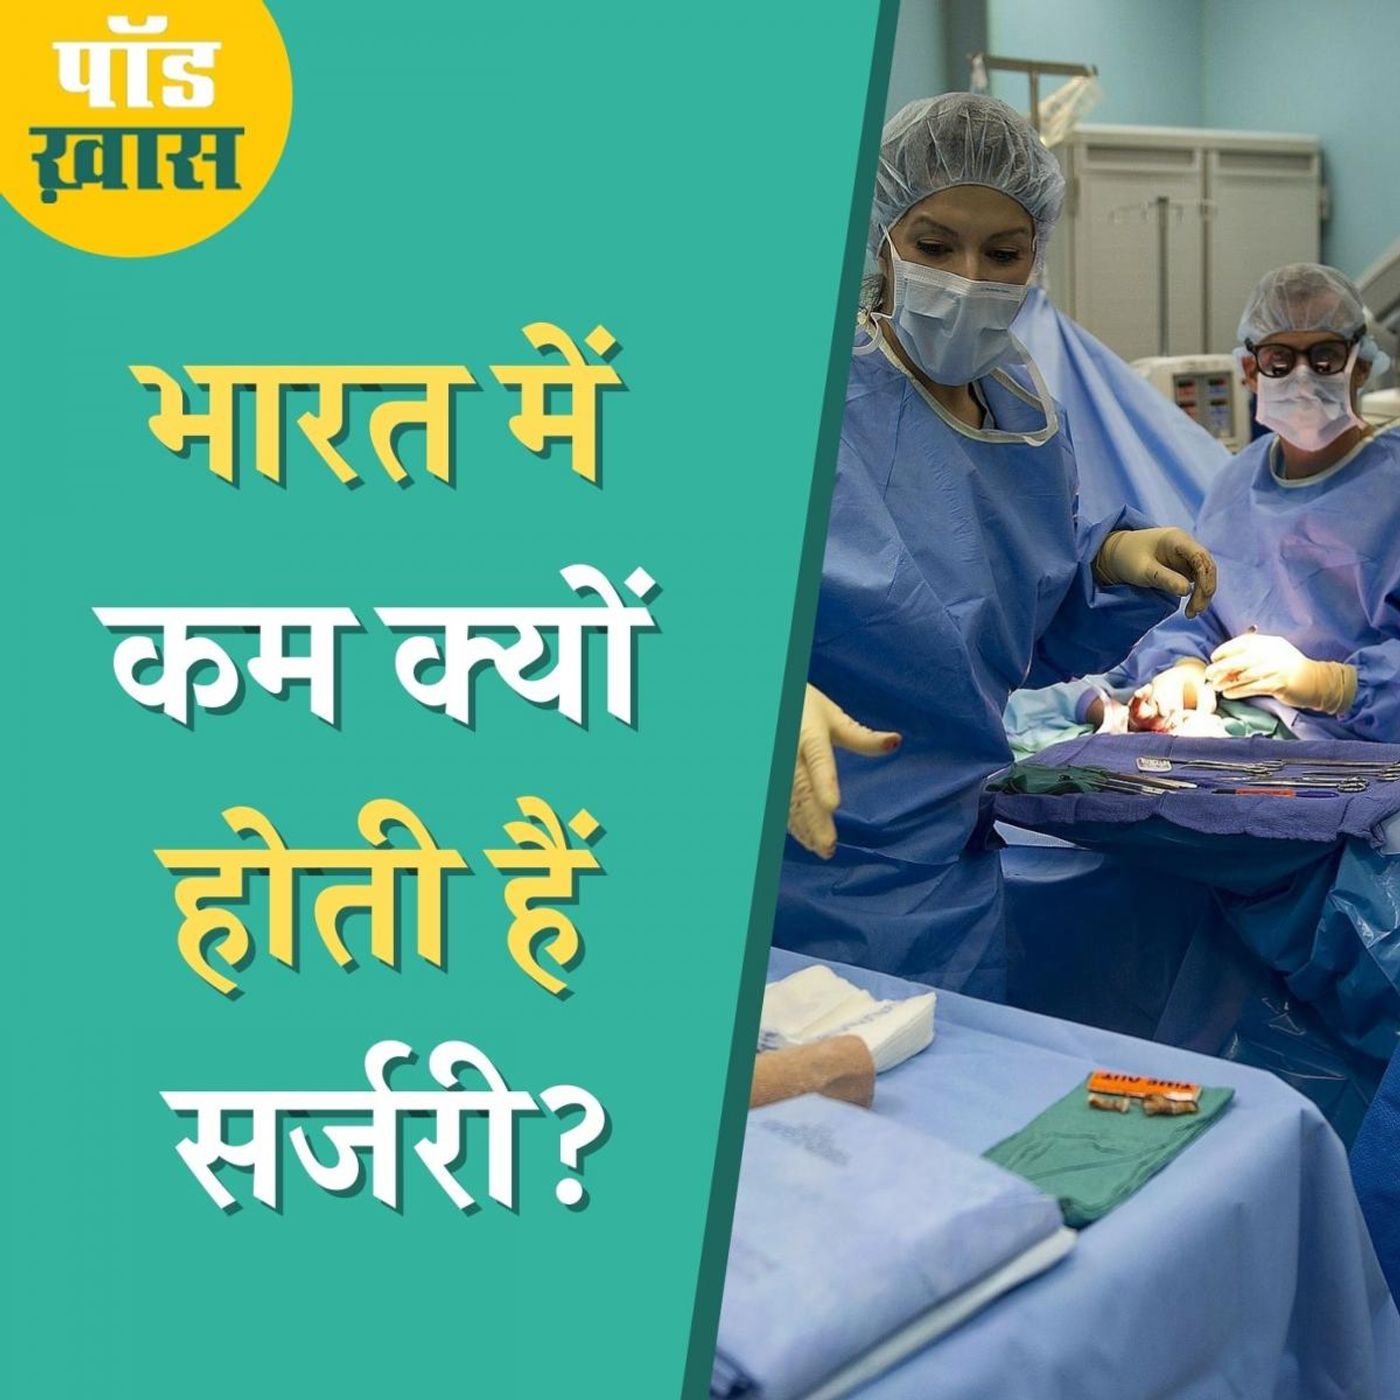 भारत में इलाज के लिए होने वाली सर्जरी की दर कम क्यों है? : पॉड ख़ास, Ep 692